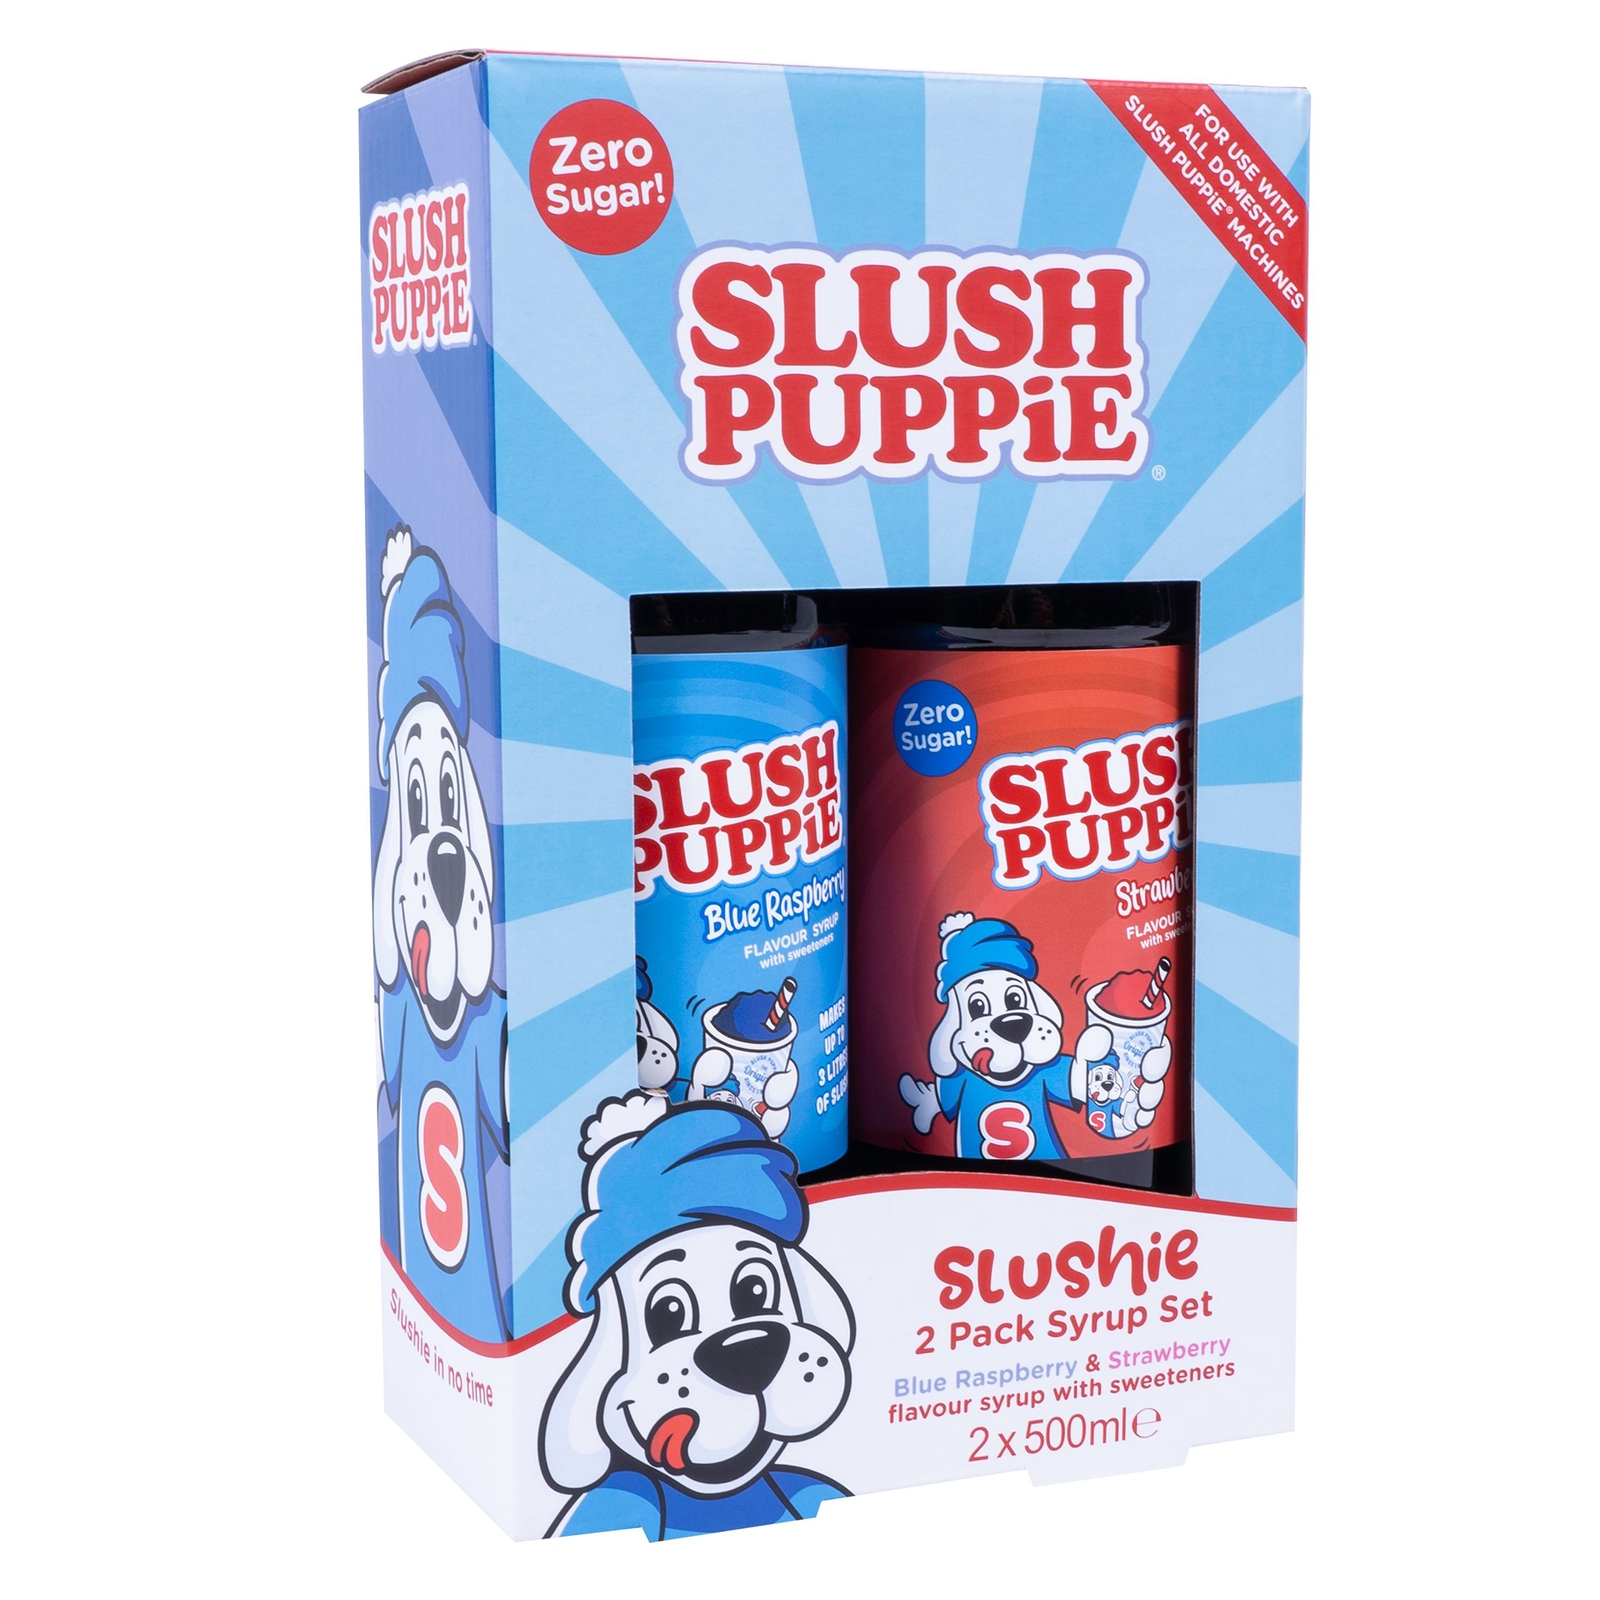 Image of Slush Puppie Zero 2 Pack Syrup Set - Blueberry & Strawberry